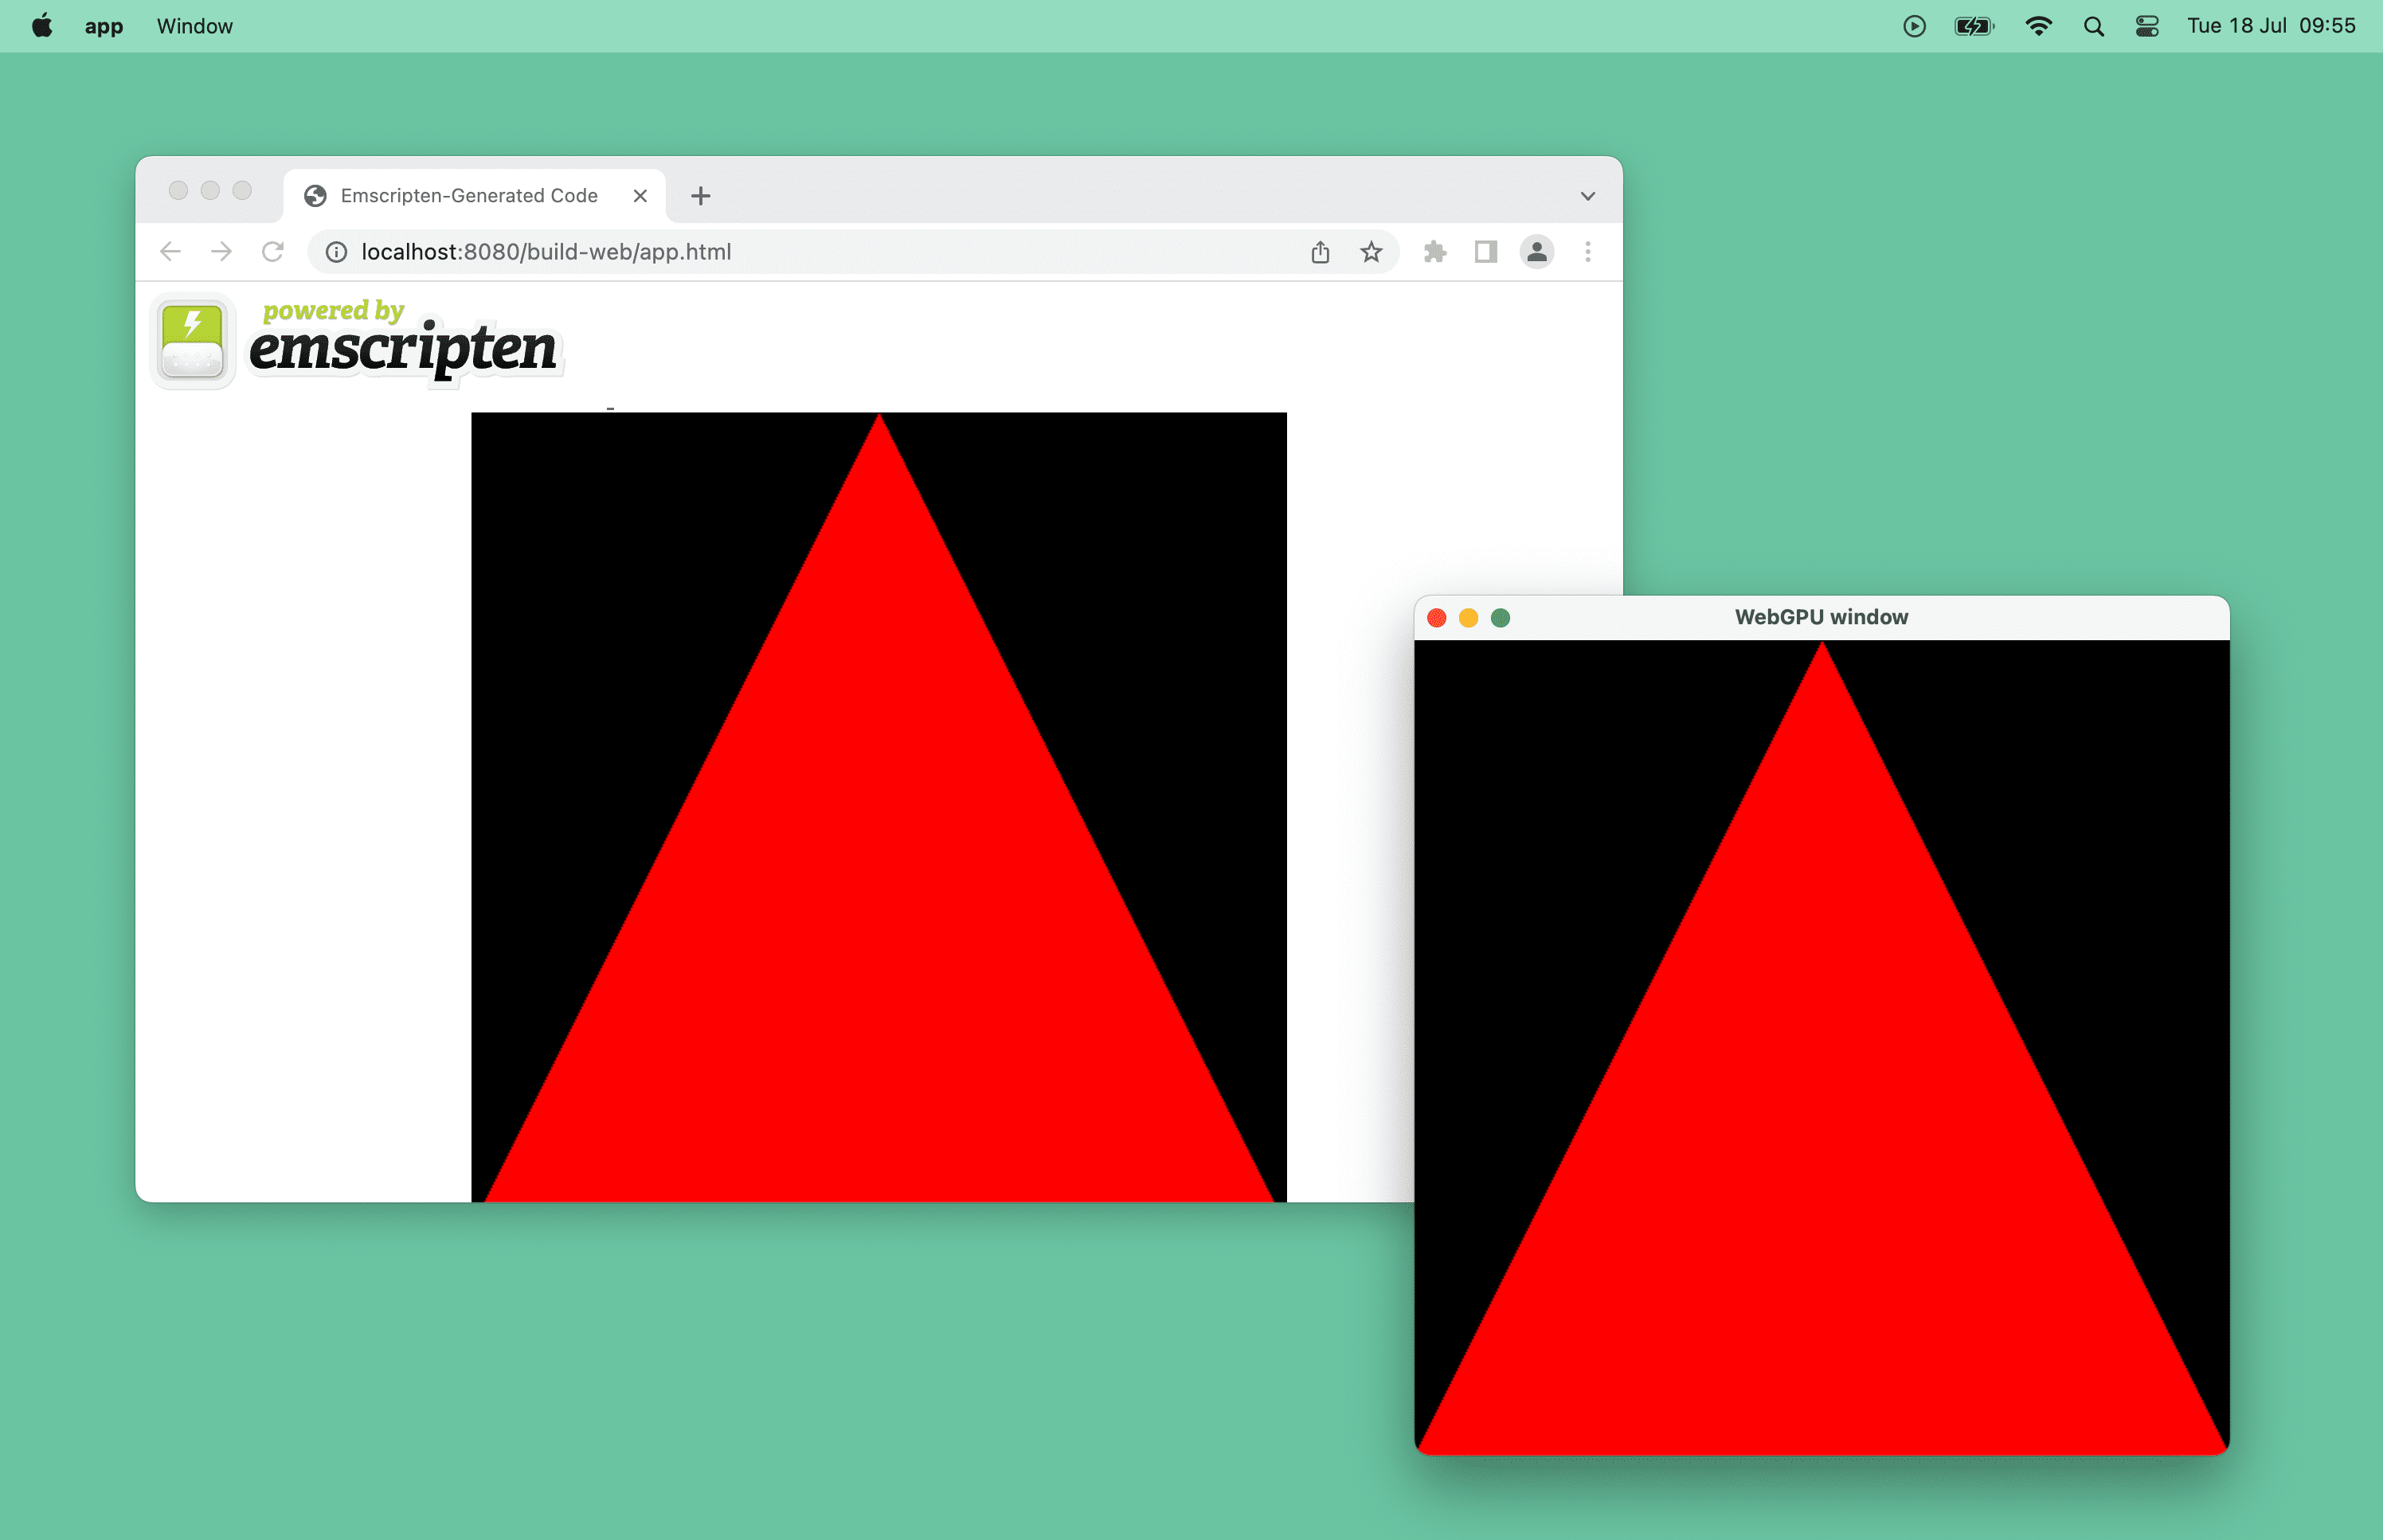 Tarayıcı penceresinde WebGPU tarafından desteklenen kırmızı bir üçgenin, macOS&#39;te ise masaüstü penceresinin ekran görüntüsü.